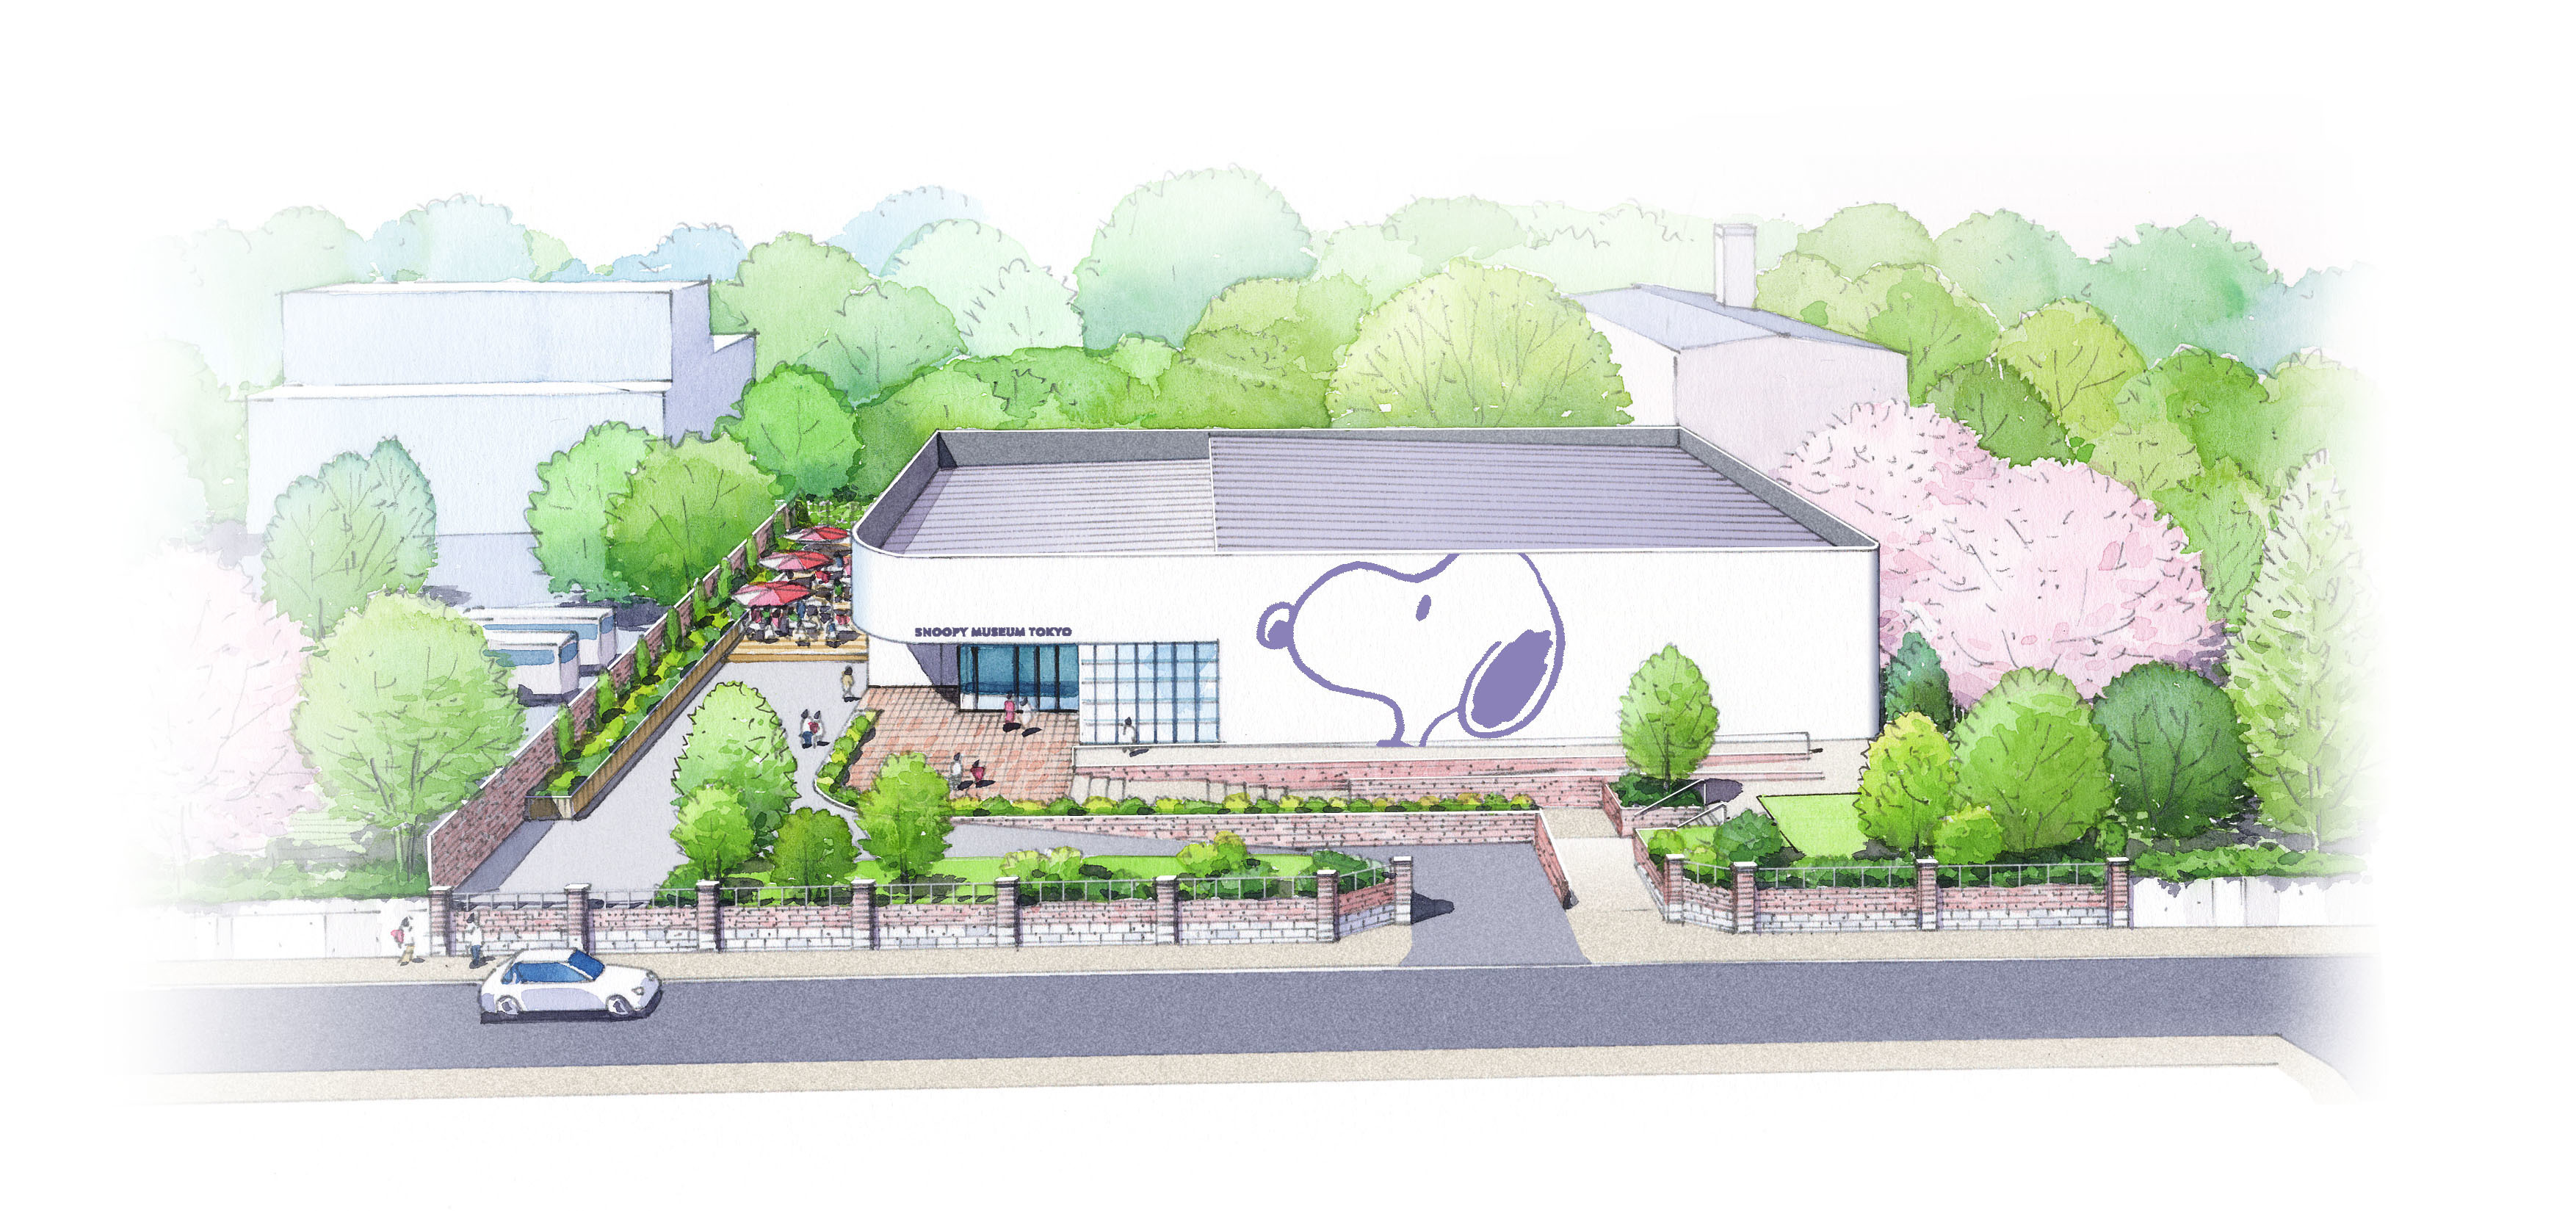 スヌーピーファンの聖地が日本にも誕生 東京 六本木に スヌーピーミュージアム 開館 Spice エンタメ特化型情報メディア スパイス